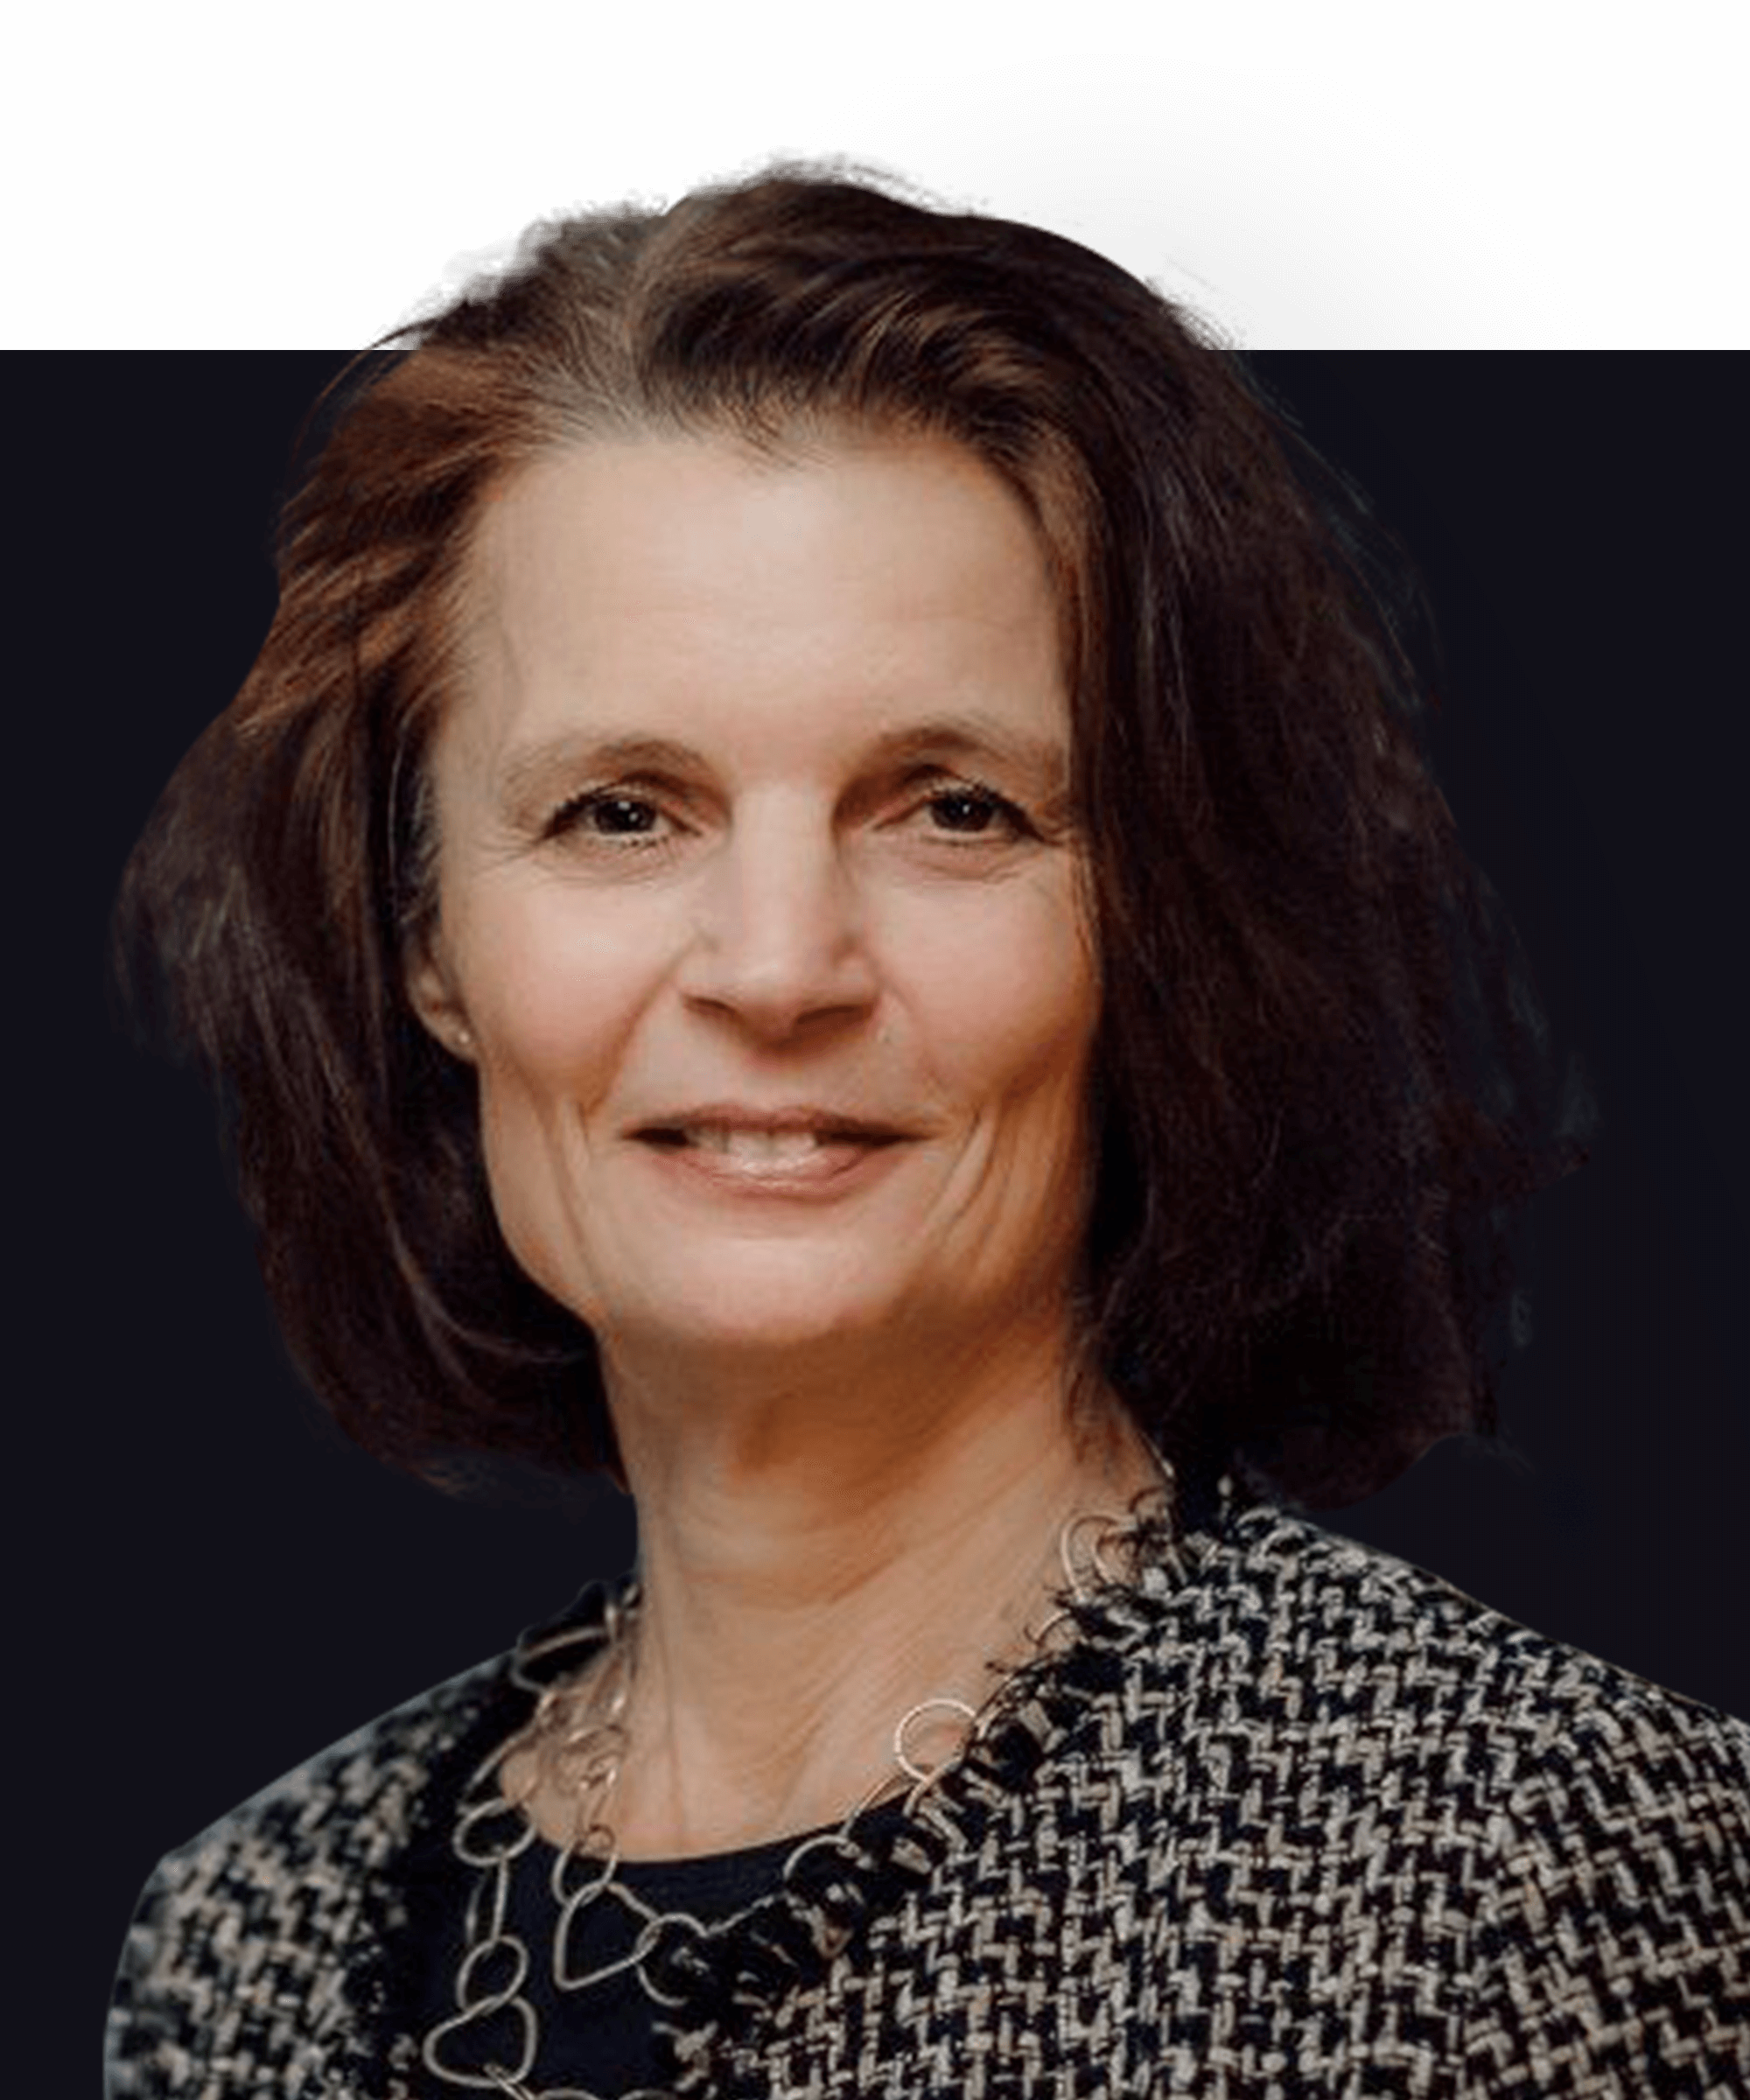 Plan de tête du directeur général allemand Rosmarie Dammler. Il s'agit d'une femme de race blanche aux cheveux bruns courts et aux yeux foncés. Elle porte une veste élégante et sourit à l'appareil photo.